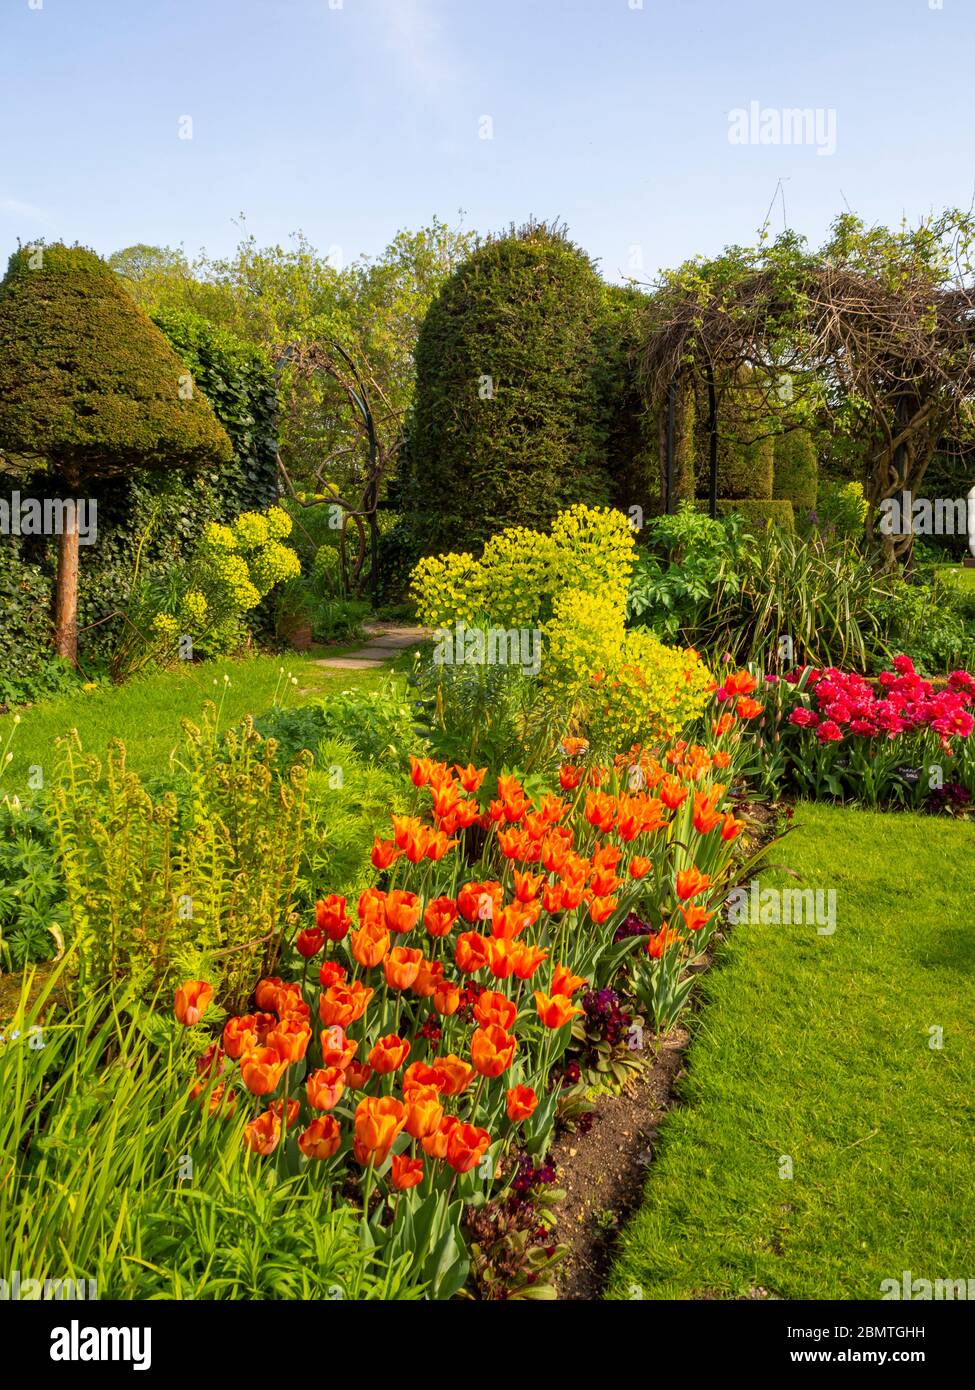 Chenies Manor giardino sommerso con tulipani vivaci e colorati di arancio, rossi esaltati dalla luce del sole tardo pomeriggio. Foto Stock